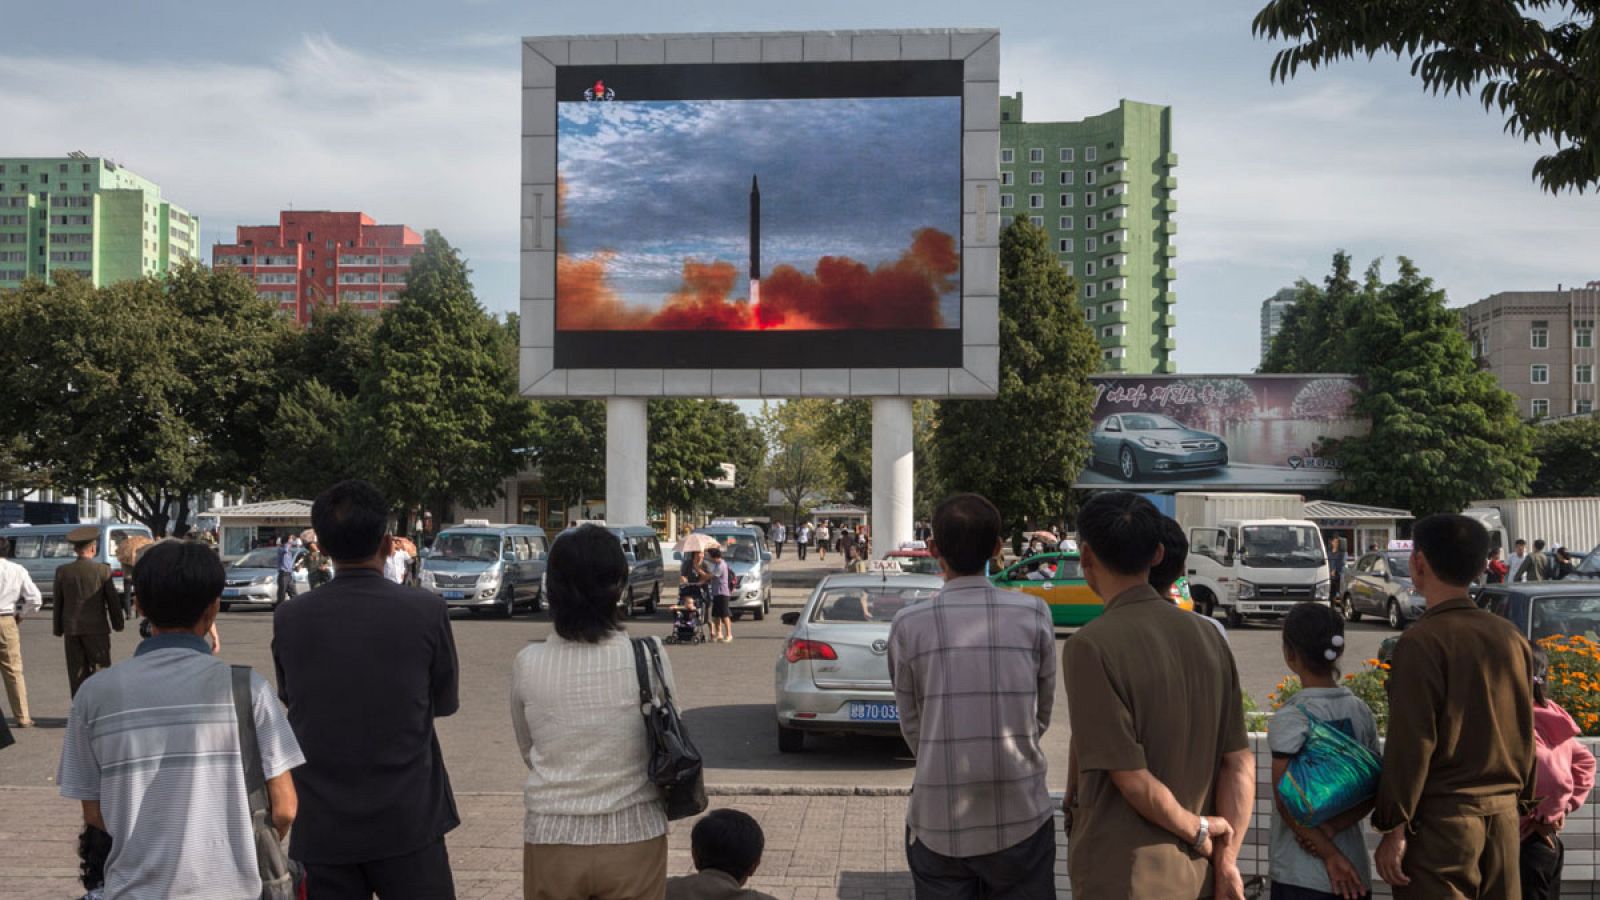 Ciudadanos norcoreanos observan el misil lanzado por Pyongyang en la televisión